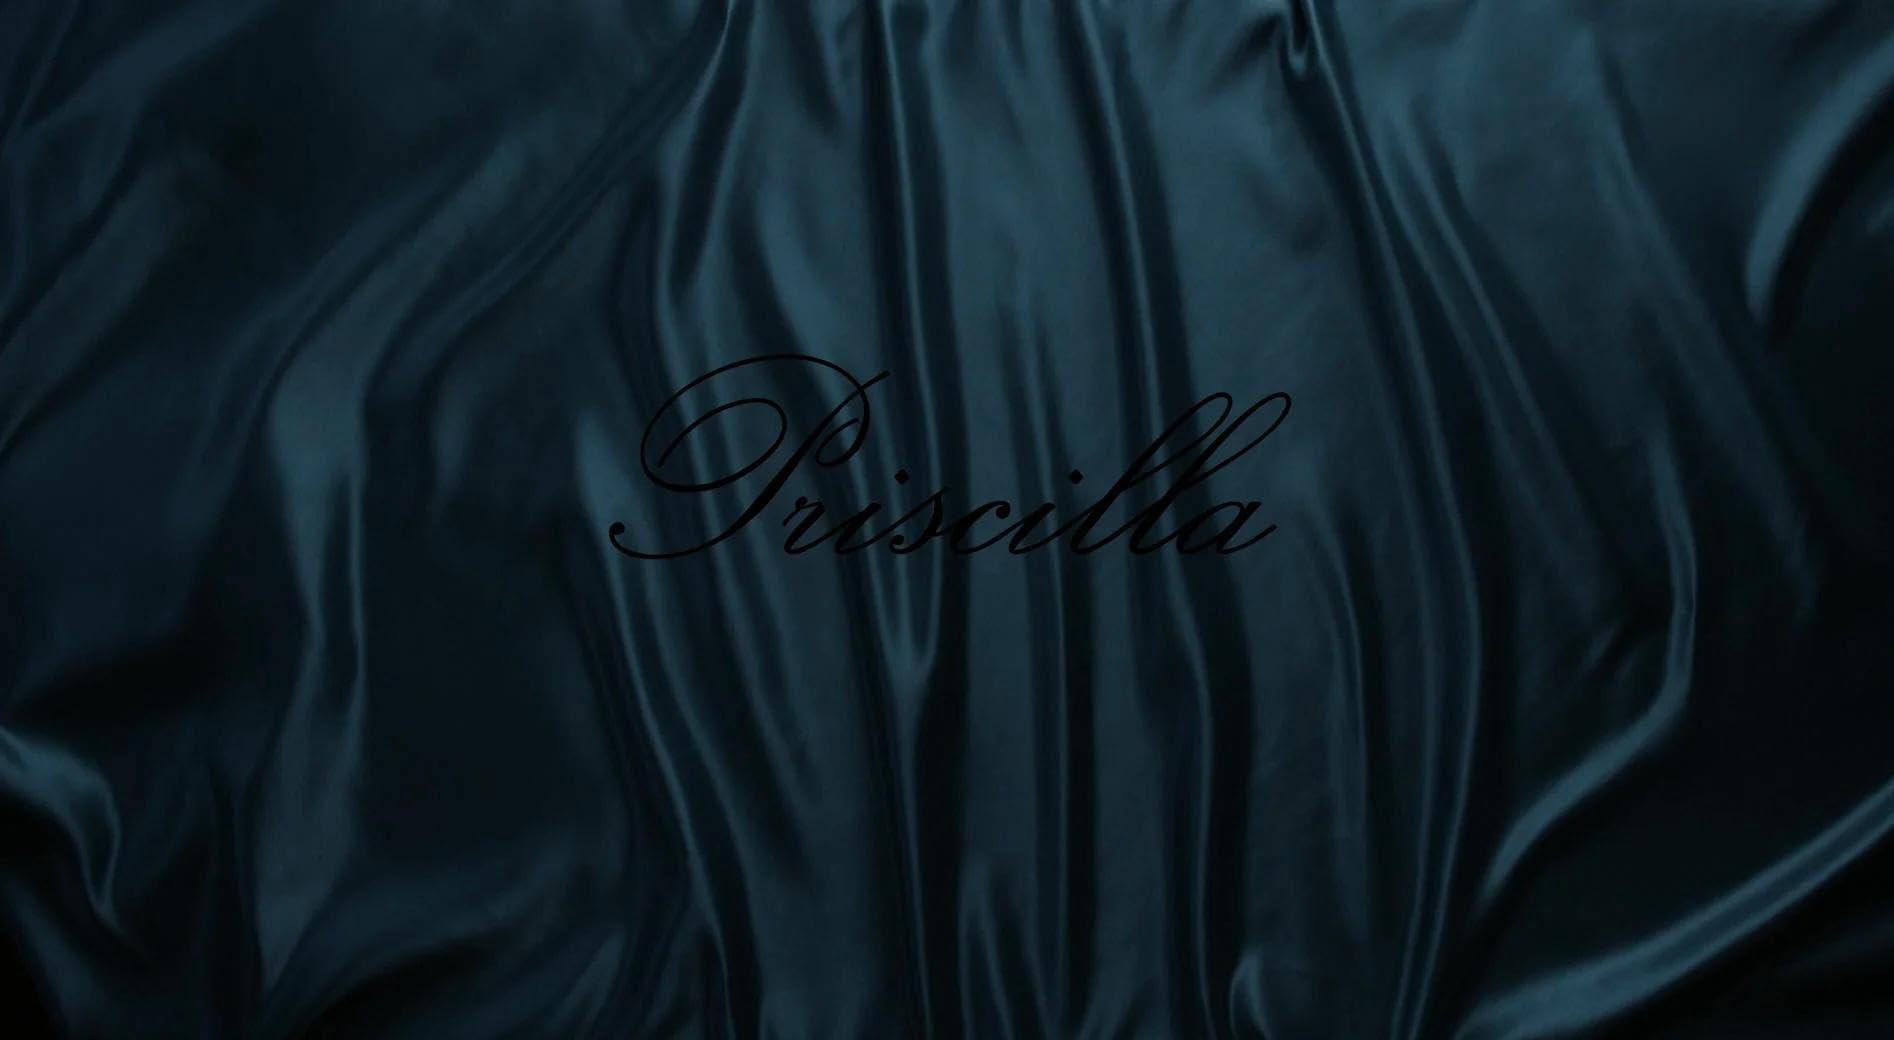 Priscilla: A Movie Review